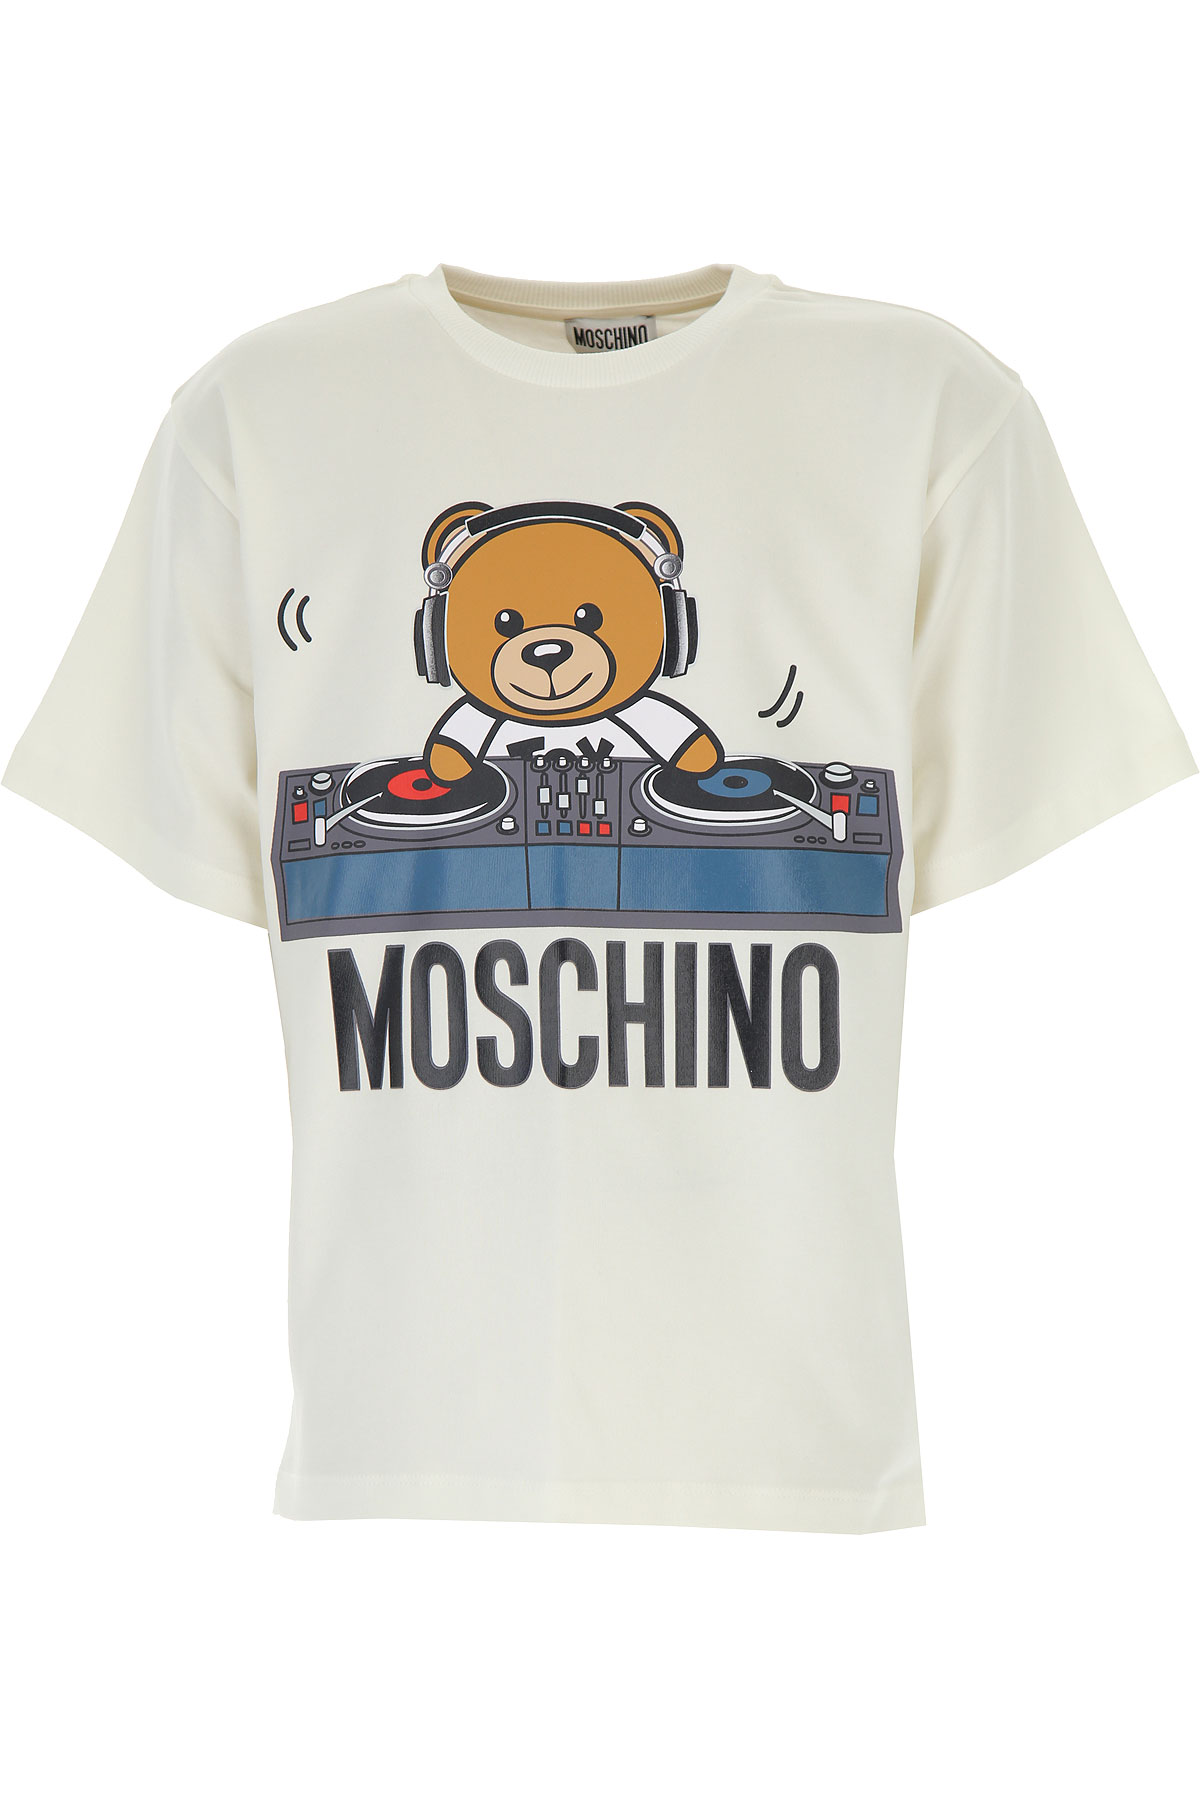 Moschino Kinder T-Shirt für Jungen Günstig im Sale, Weiss, Baumwolle, 2017, 12Y 14Y 6Y 8Y